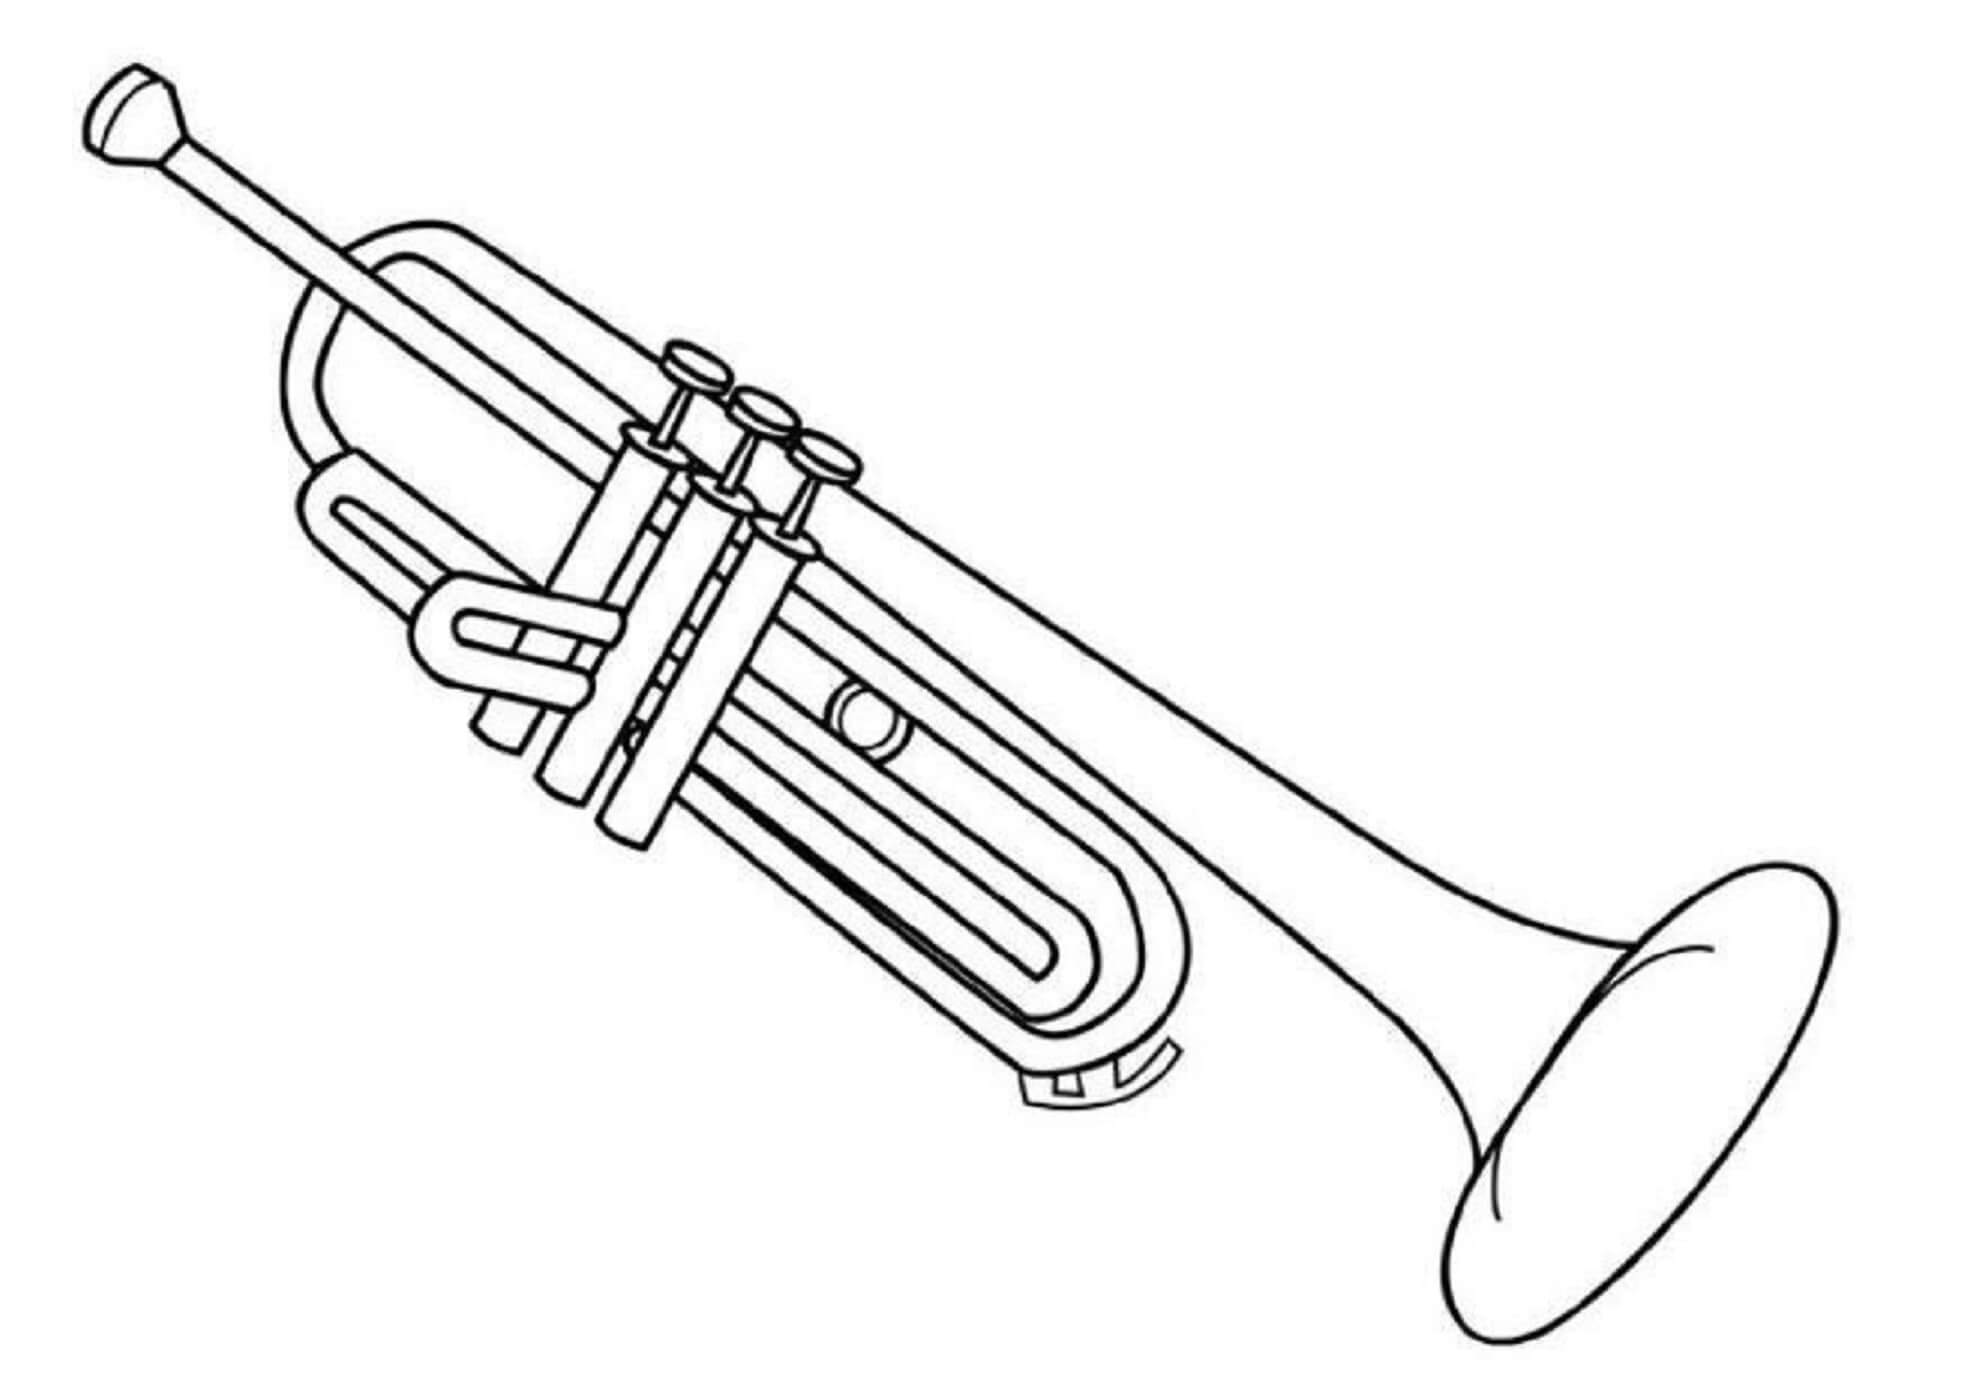 Распечатать музыкальный инструмент. Музыкальный инструмент "труба". Раскраска музыкальные инструменты для детей. Раскраска труба музыкальный инструмент. Труба музыкальный инструмент раскраска для детей.